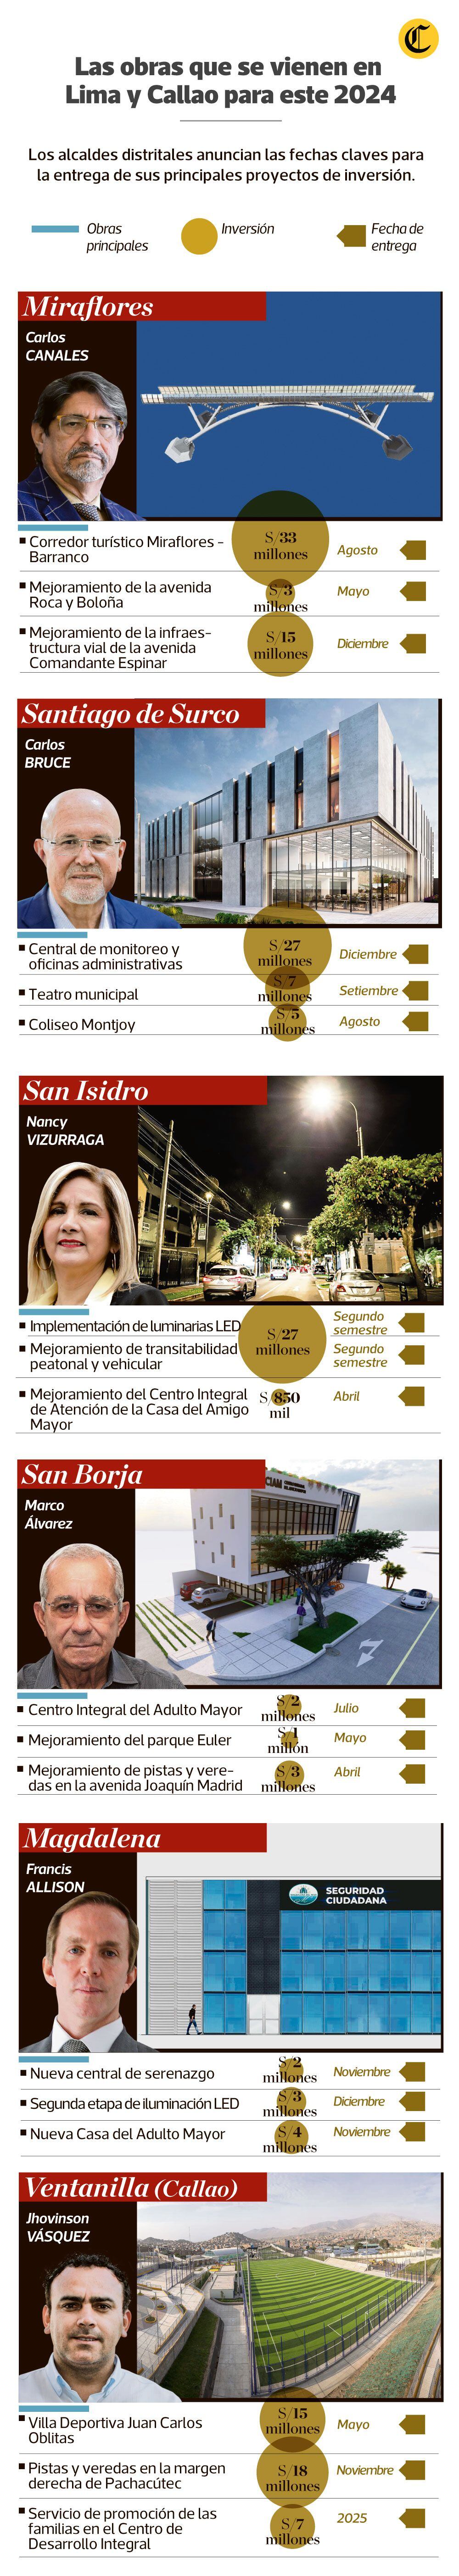 Los alcalde de Lima y Callao con las obras más avanzadas para este 2024.